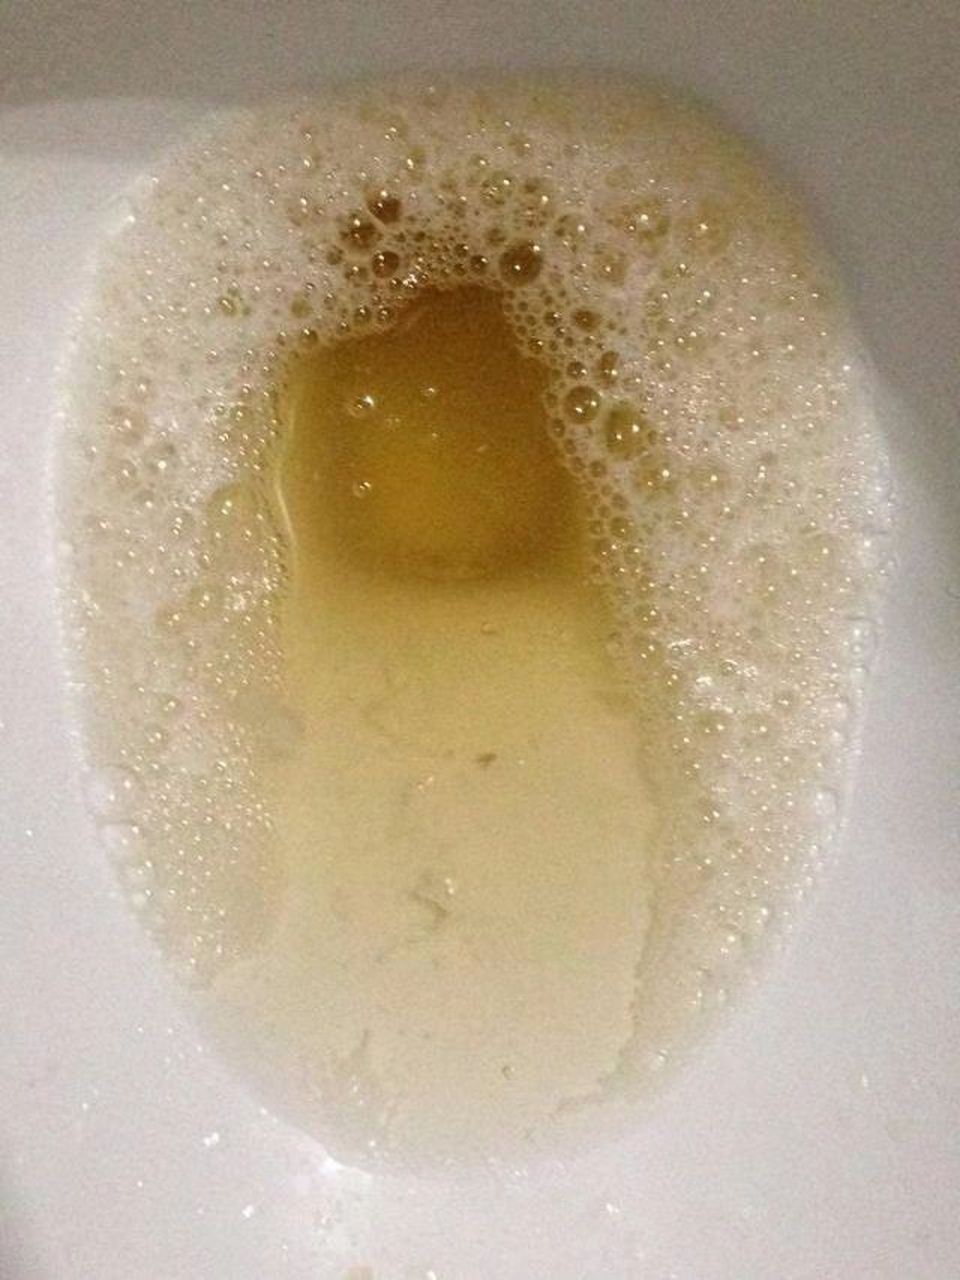 泡沫尿的图片 正常图片